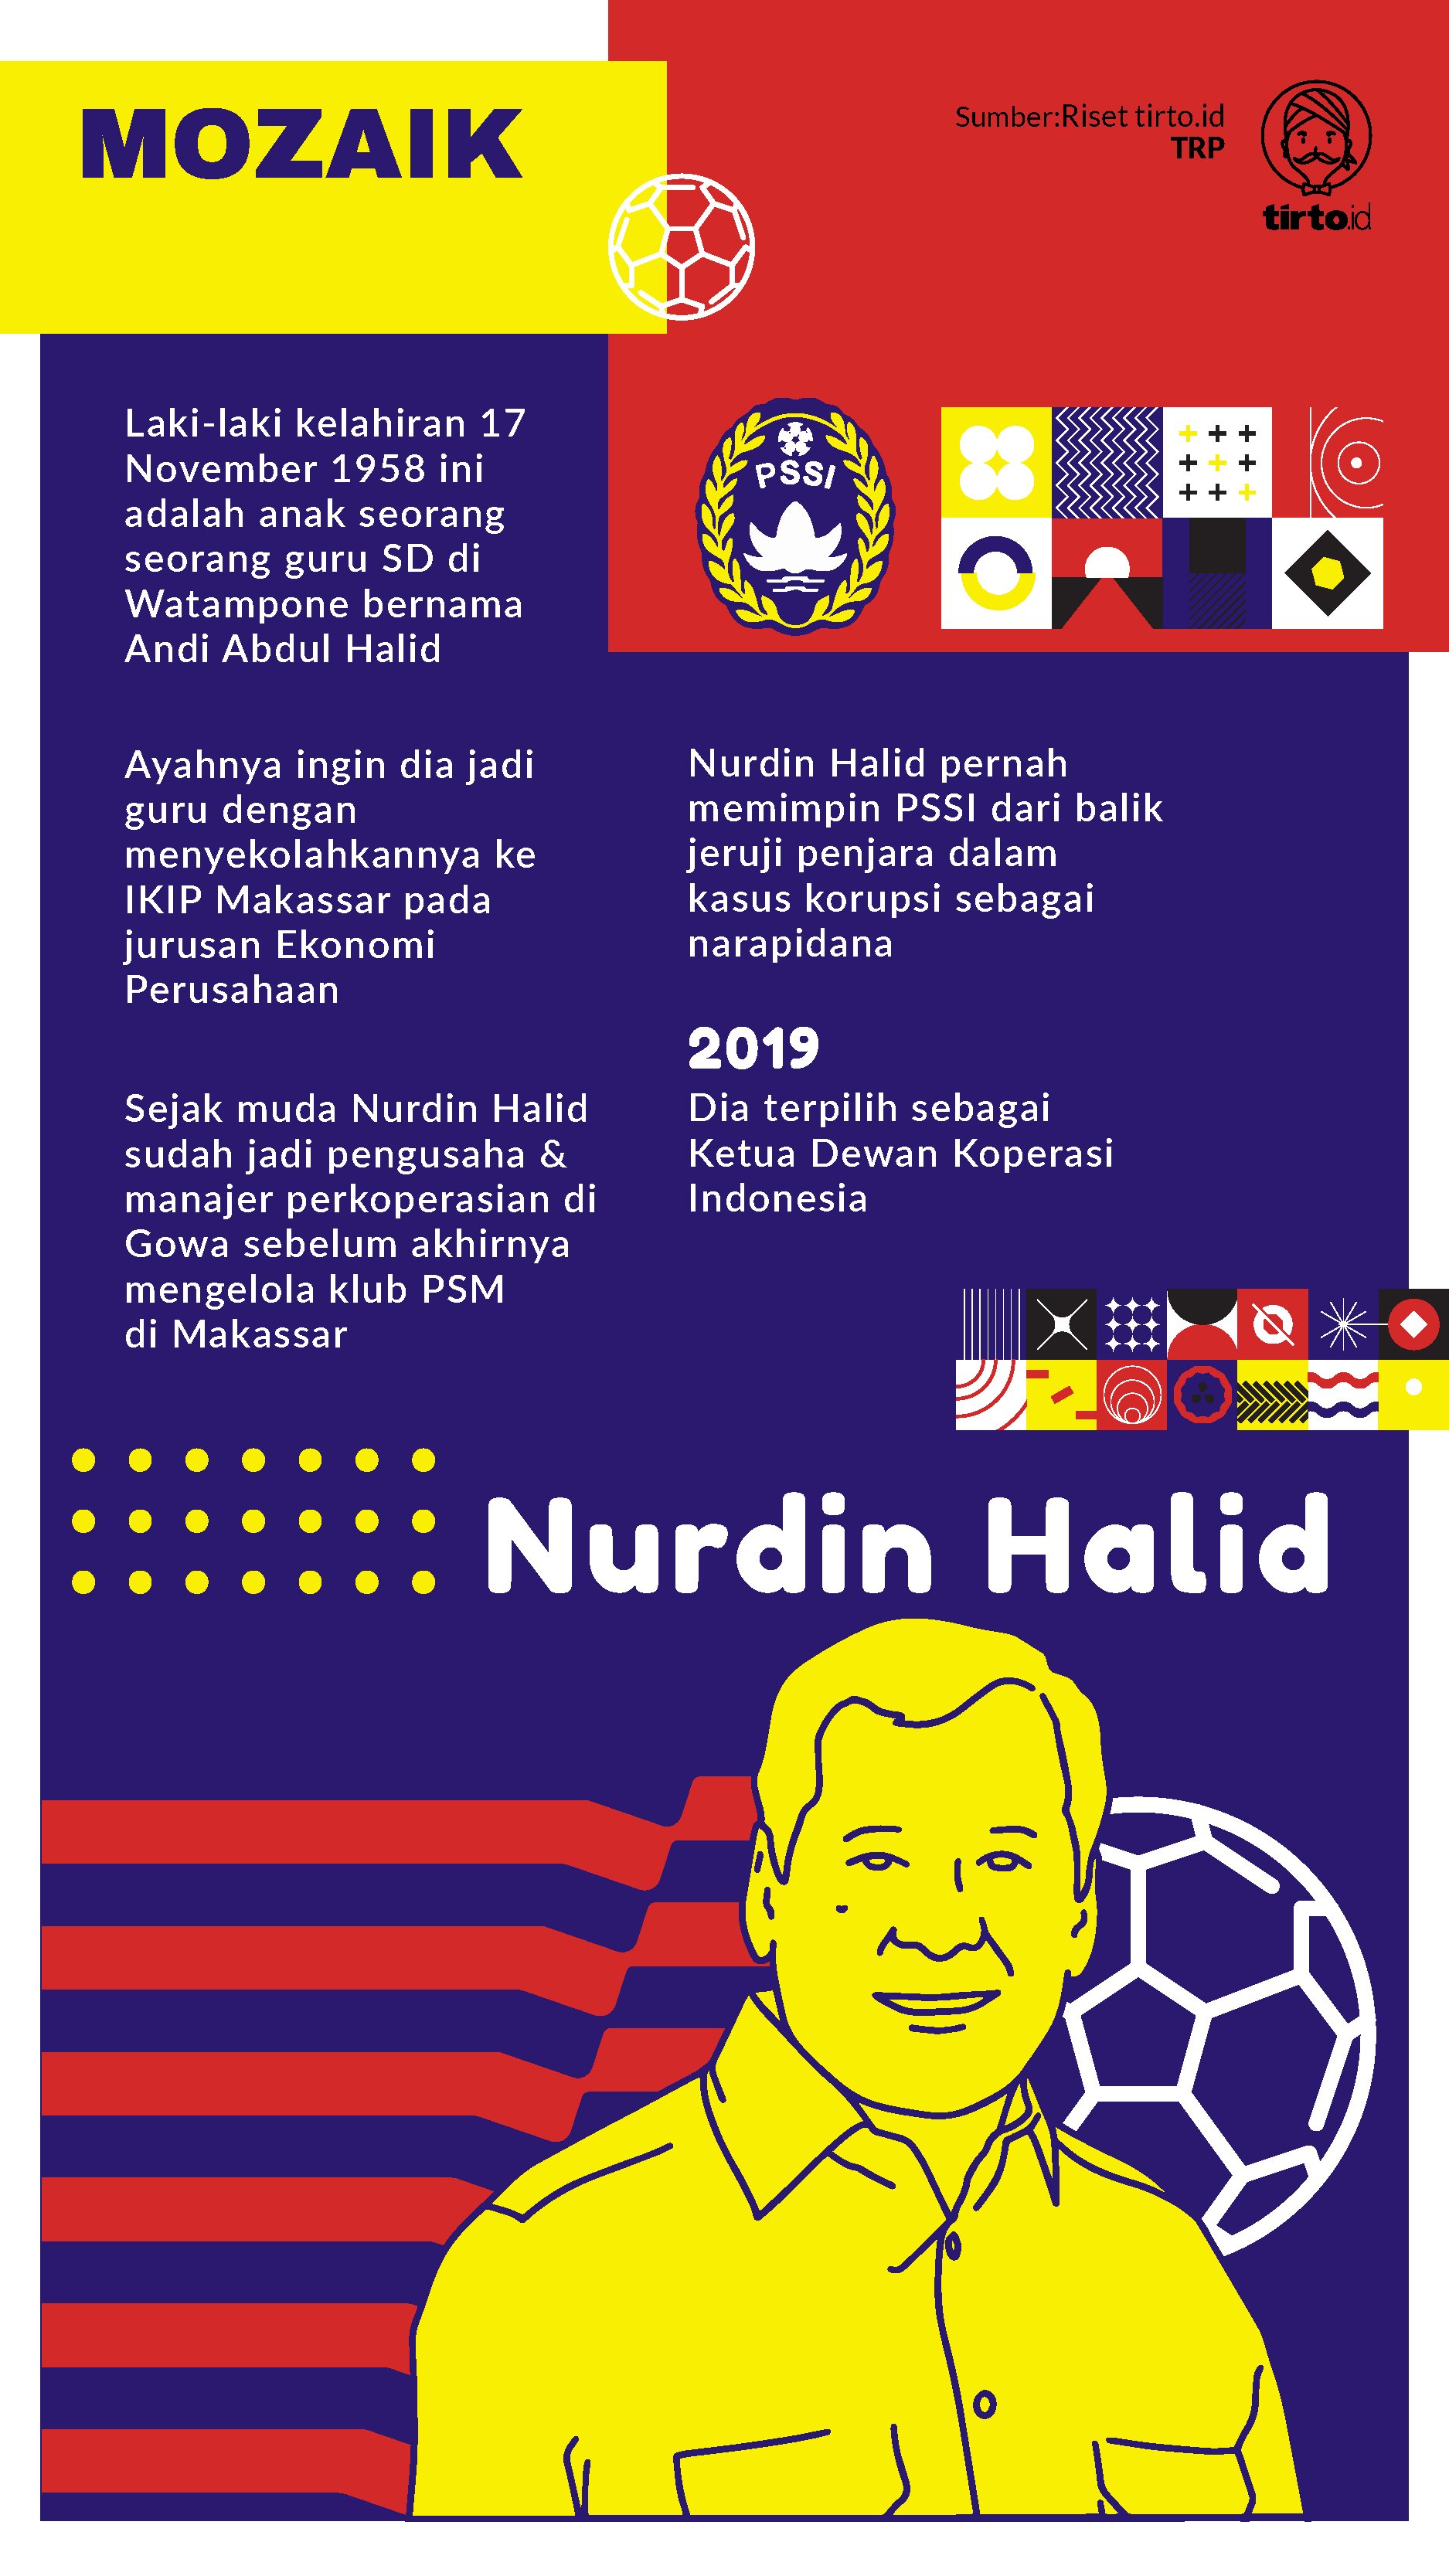 Infografik Mozaik Nurdin Halid